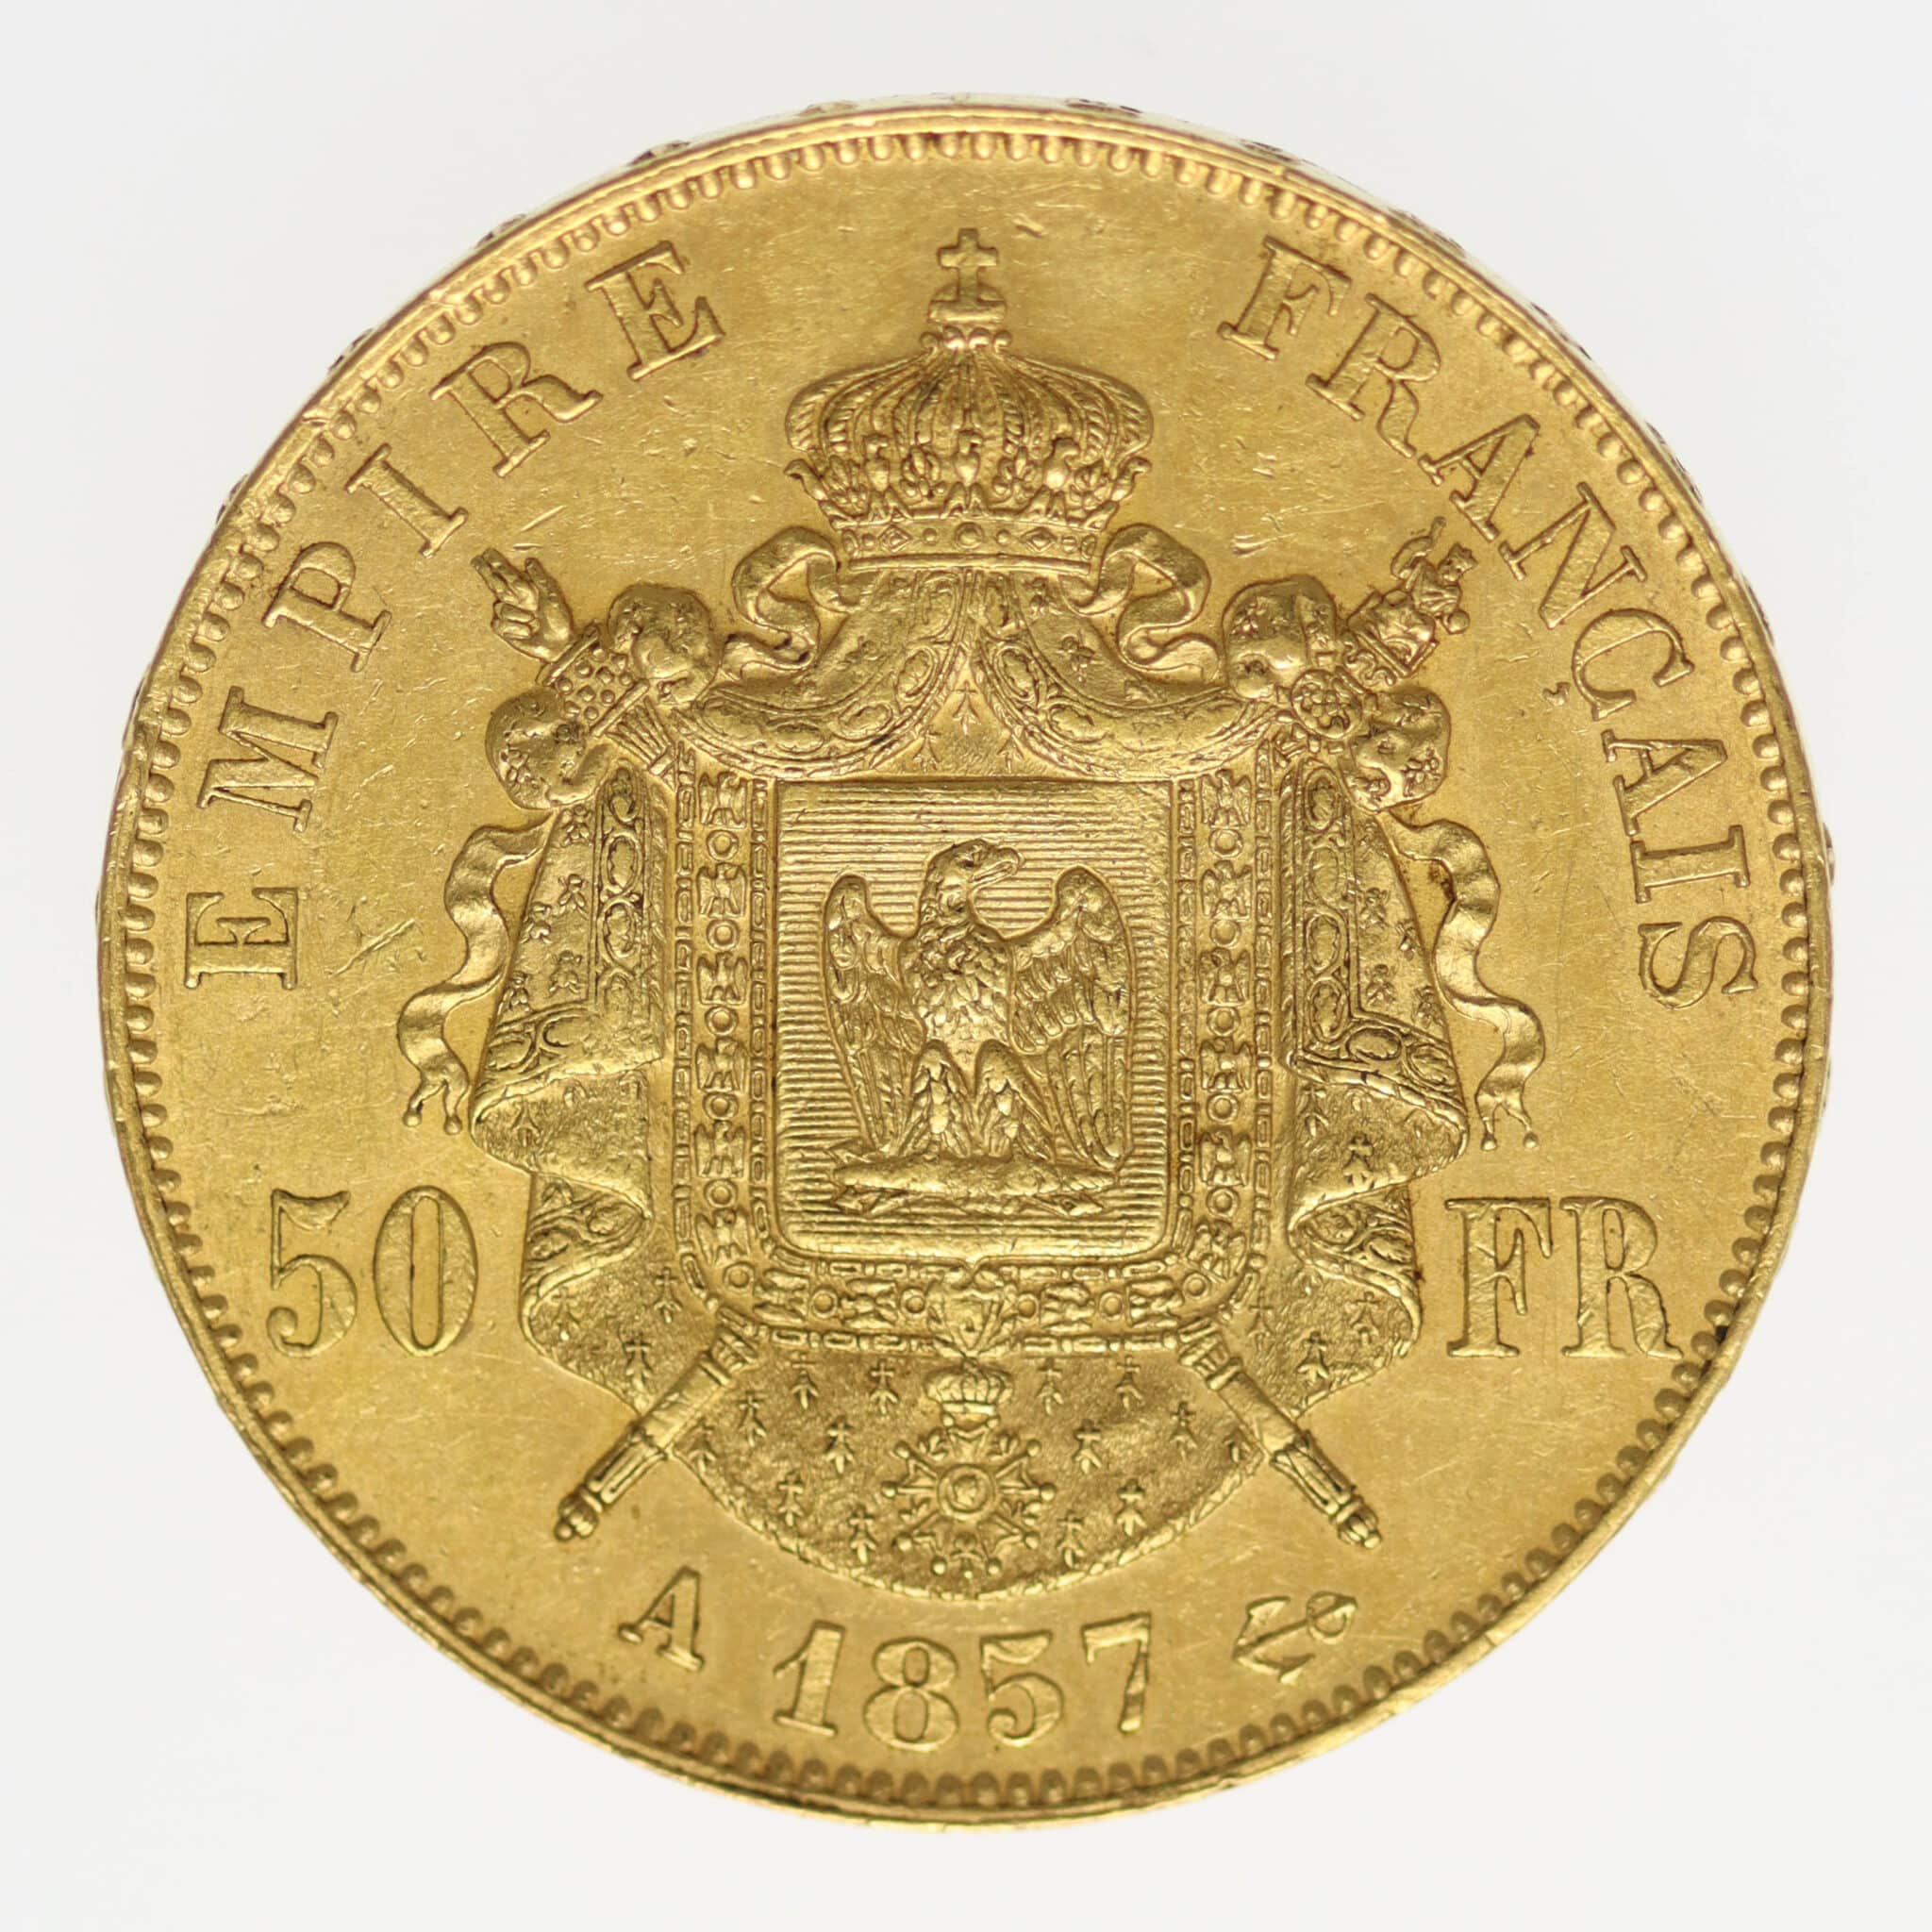 belgien - Belgien Leopold I. 20 Francs 1865